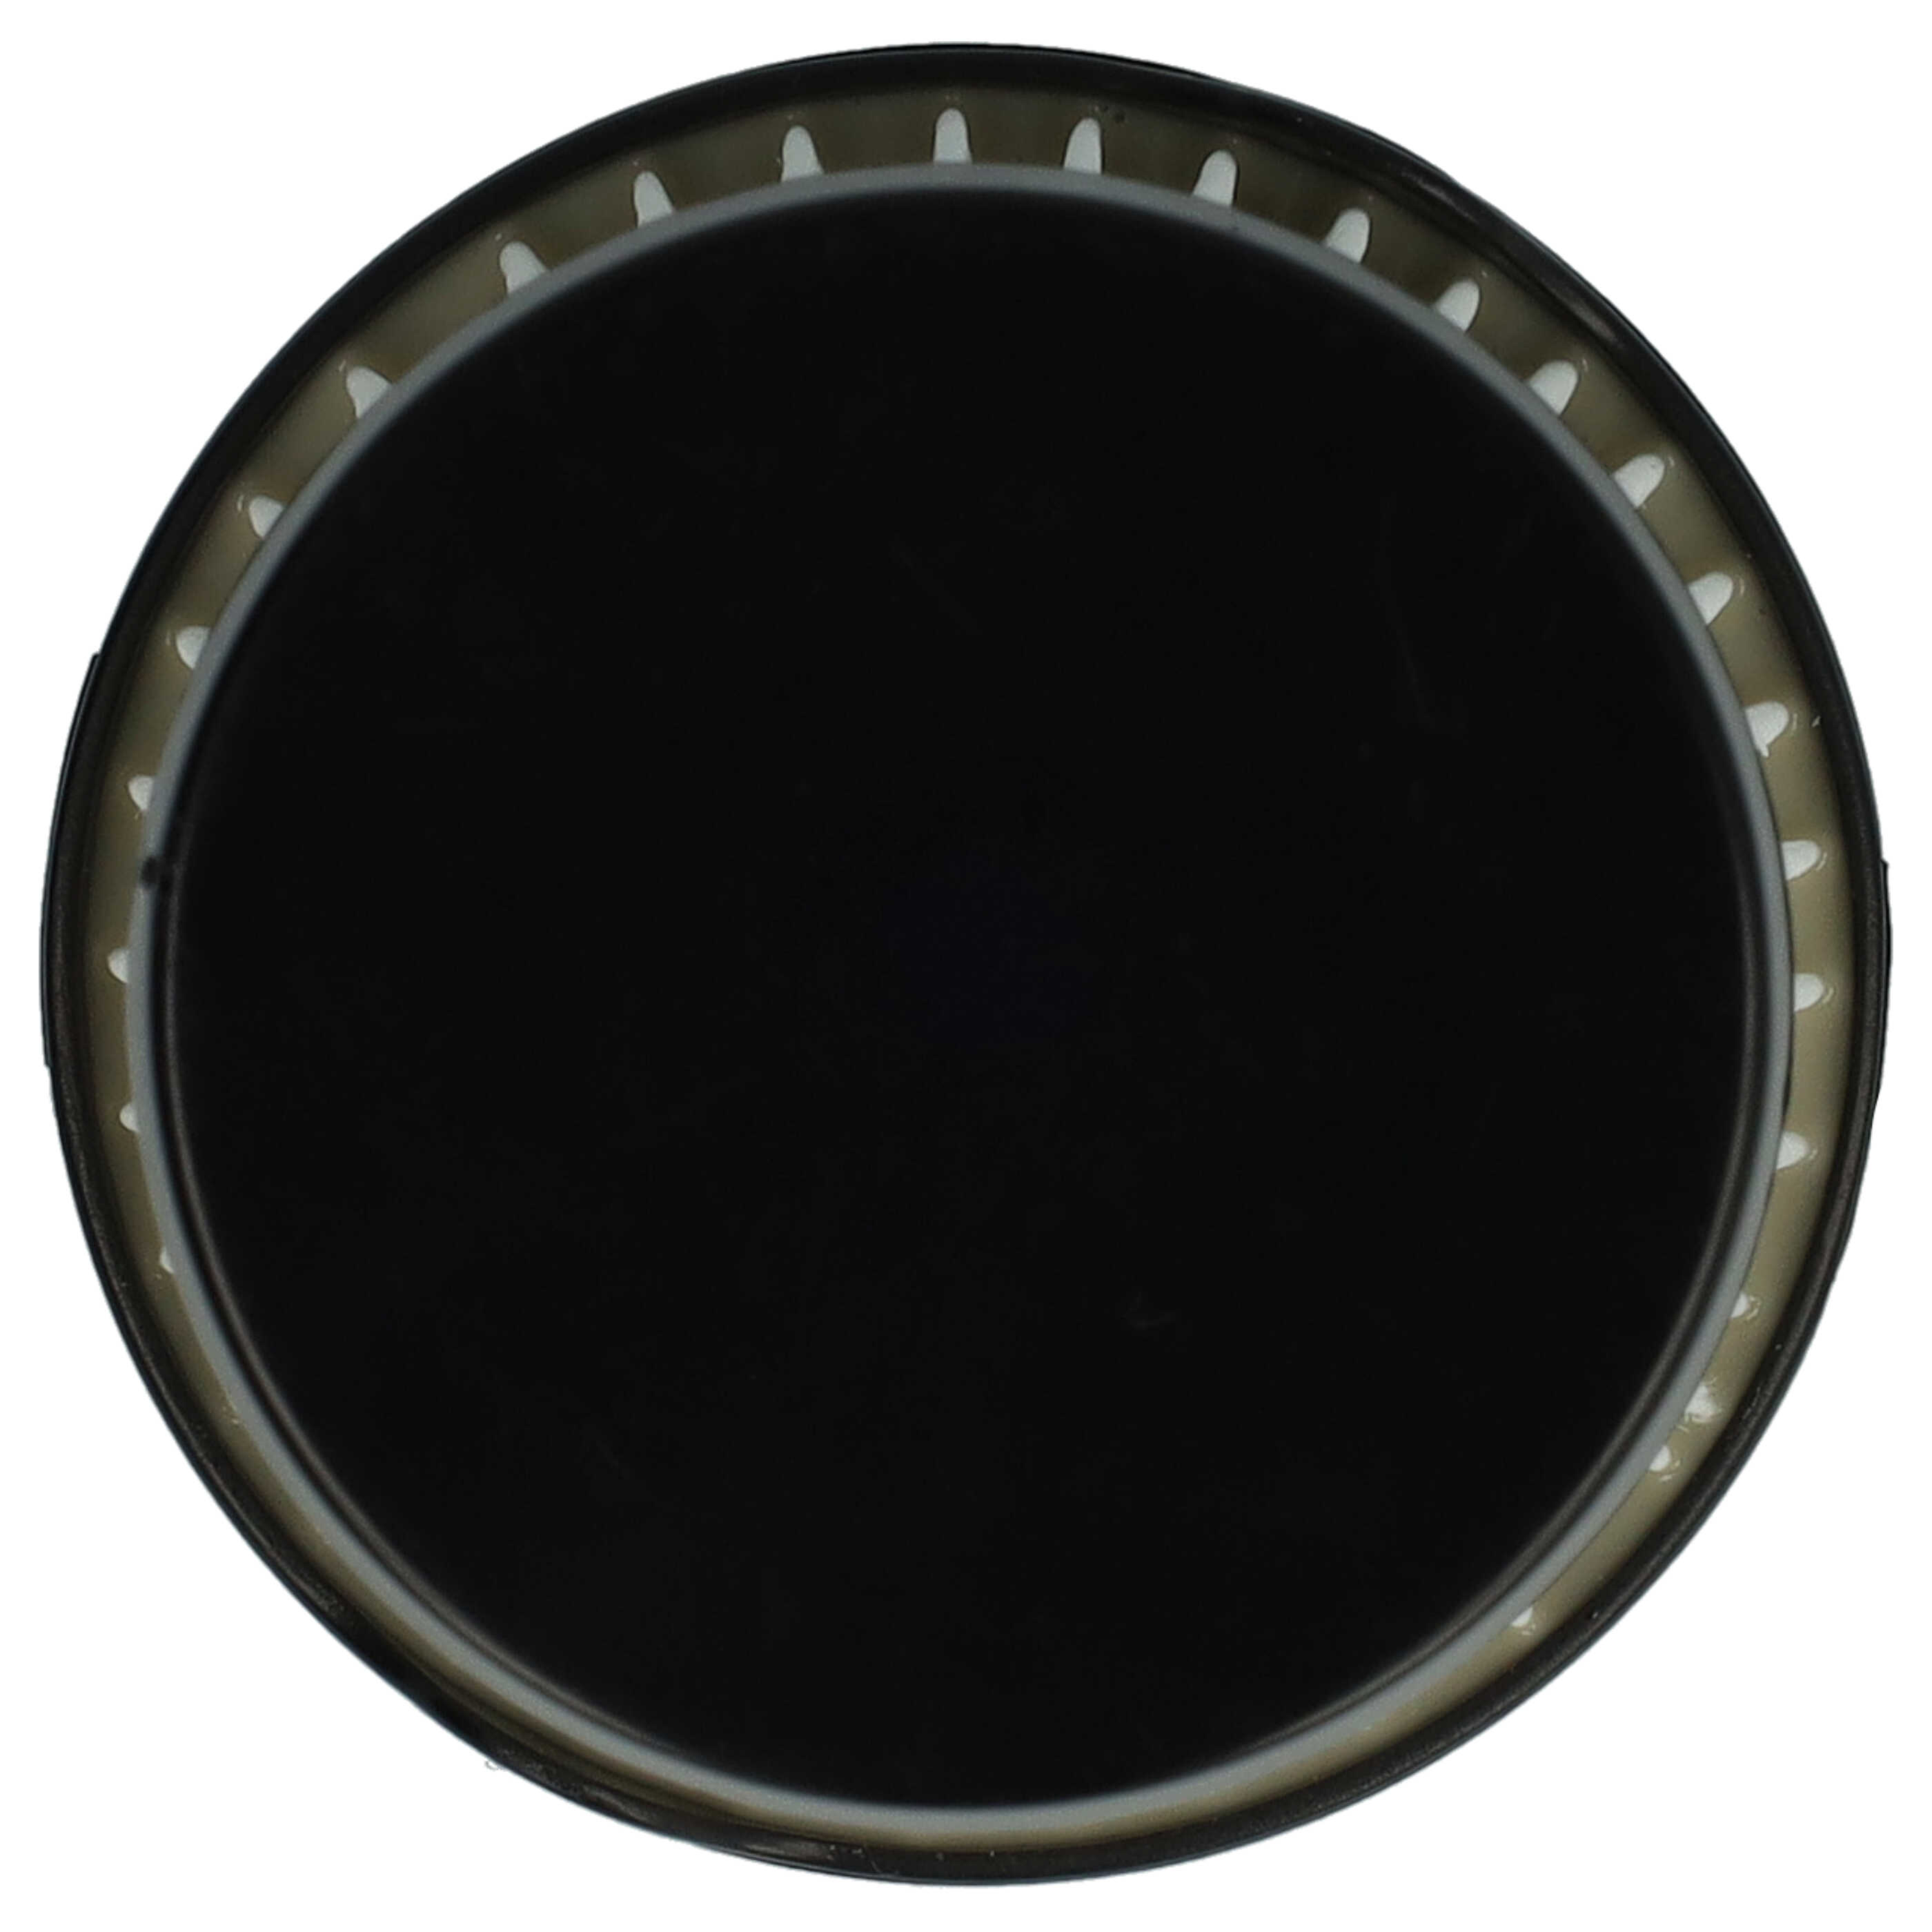 2x Filtro reemplaza AEG AEF150, 9001683755, 90094073100 para aspiradora - filtro laminar, negro / blanco